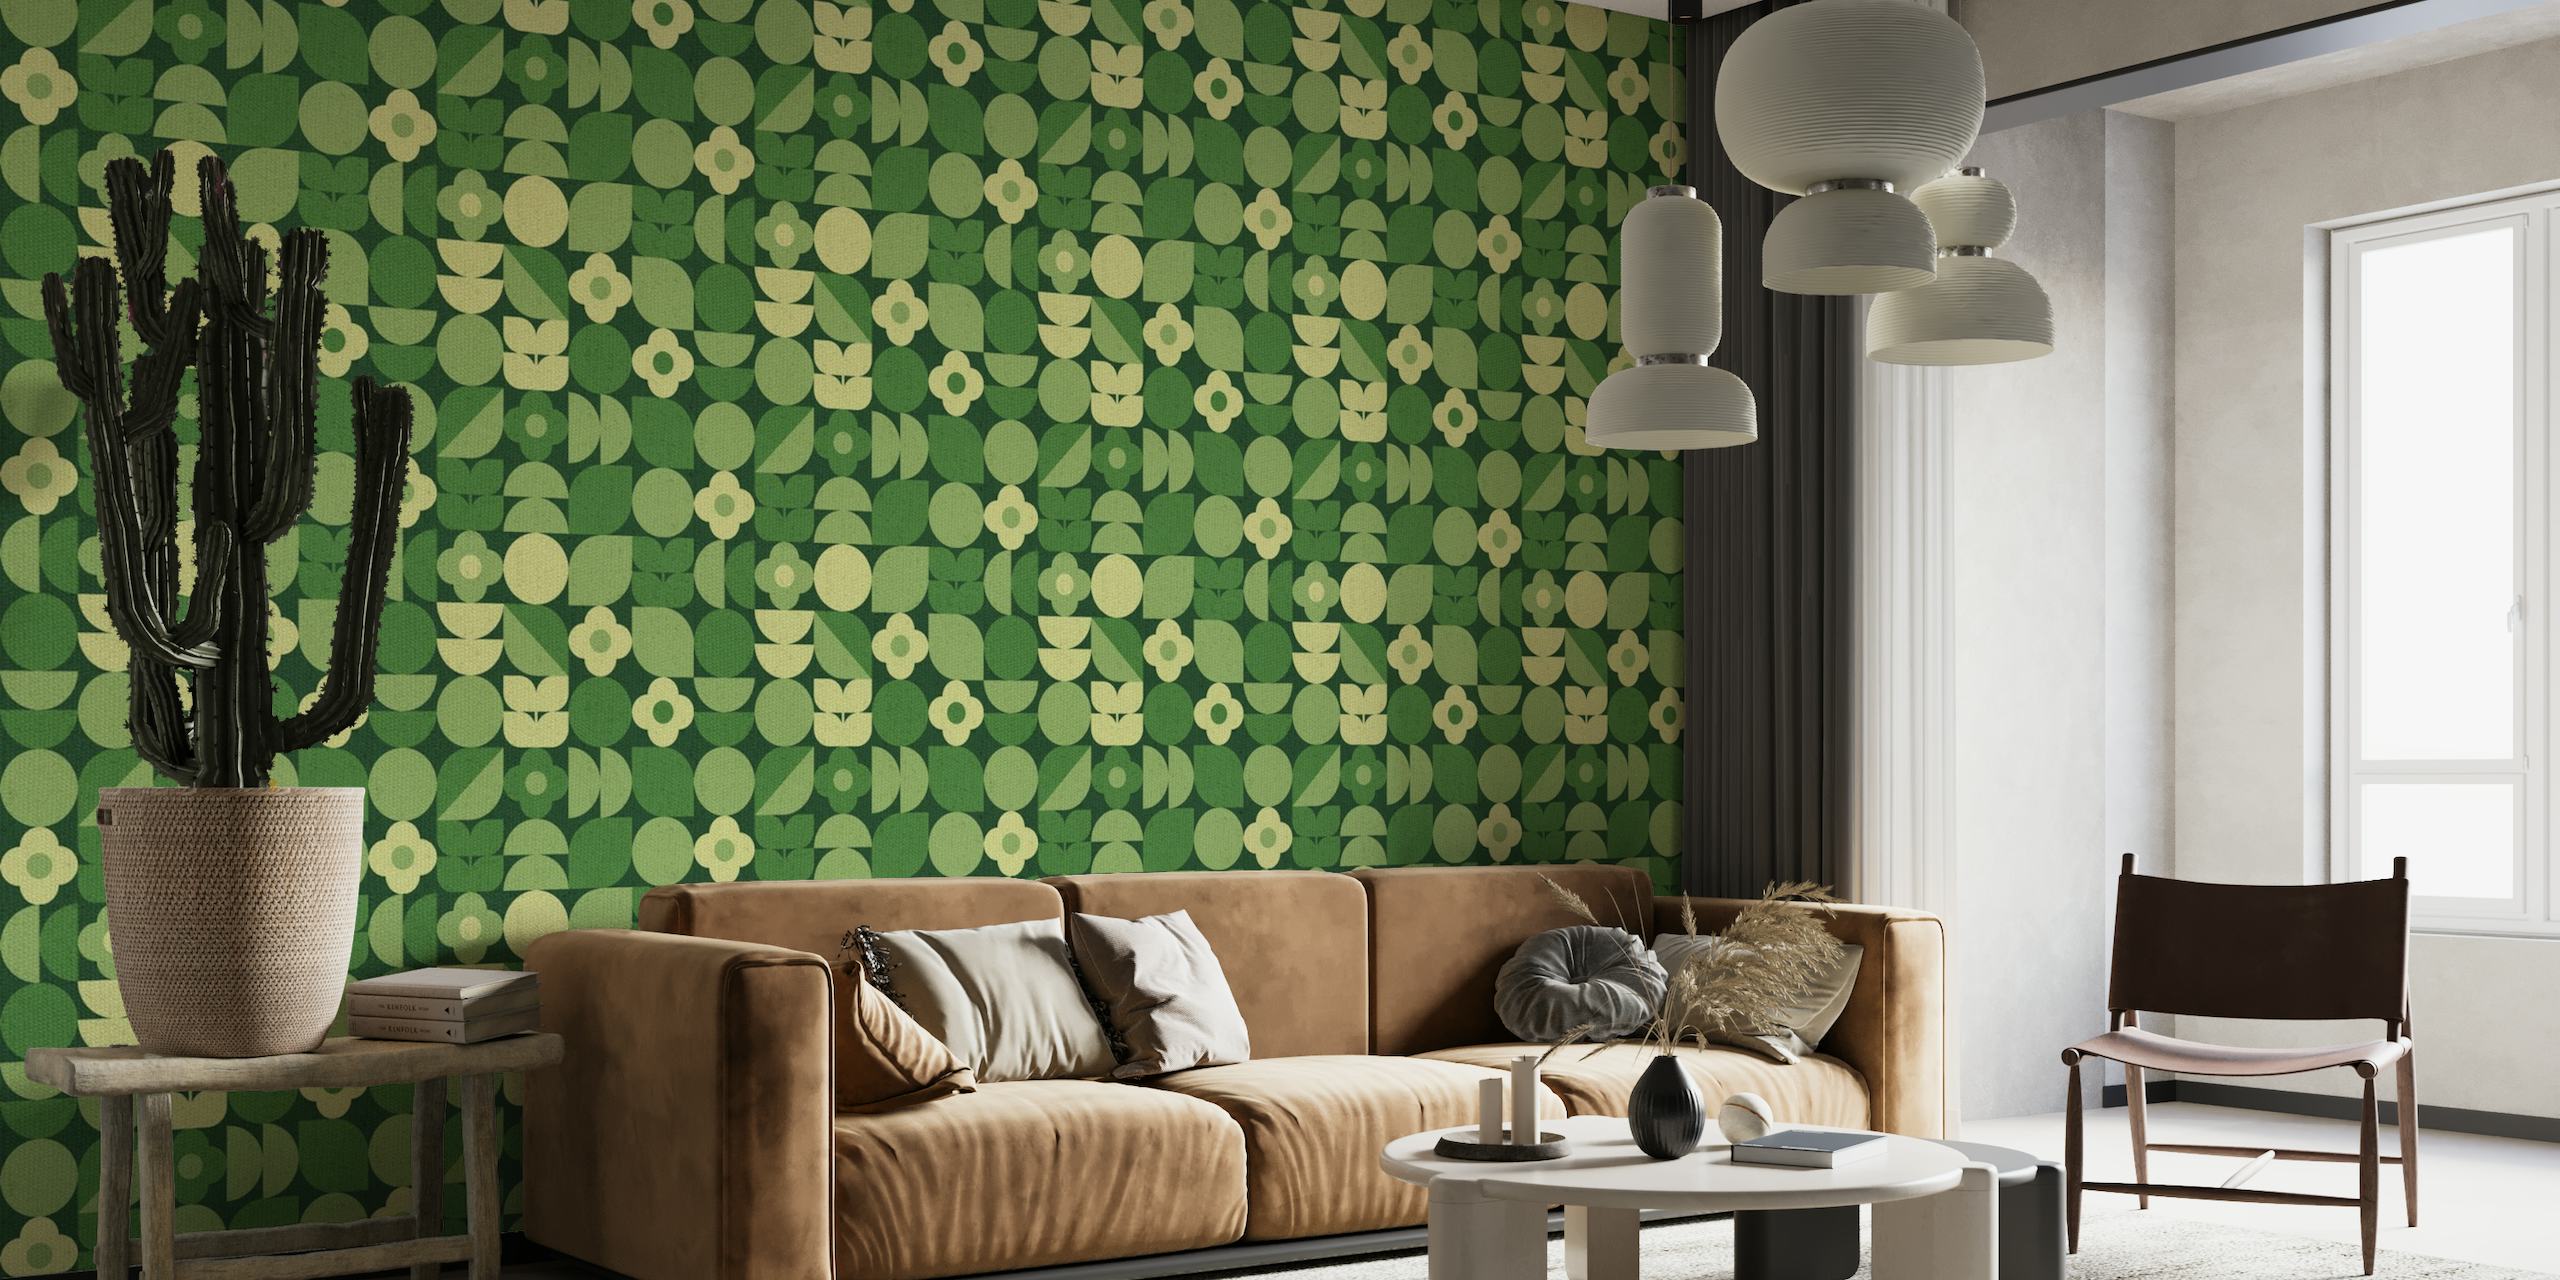 Geo Bauhaus Green Floral Shapes papiers peint